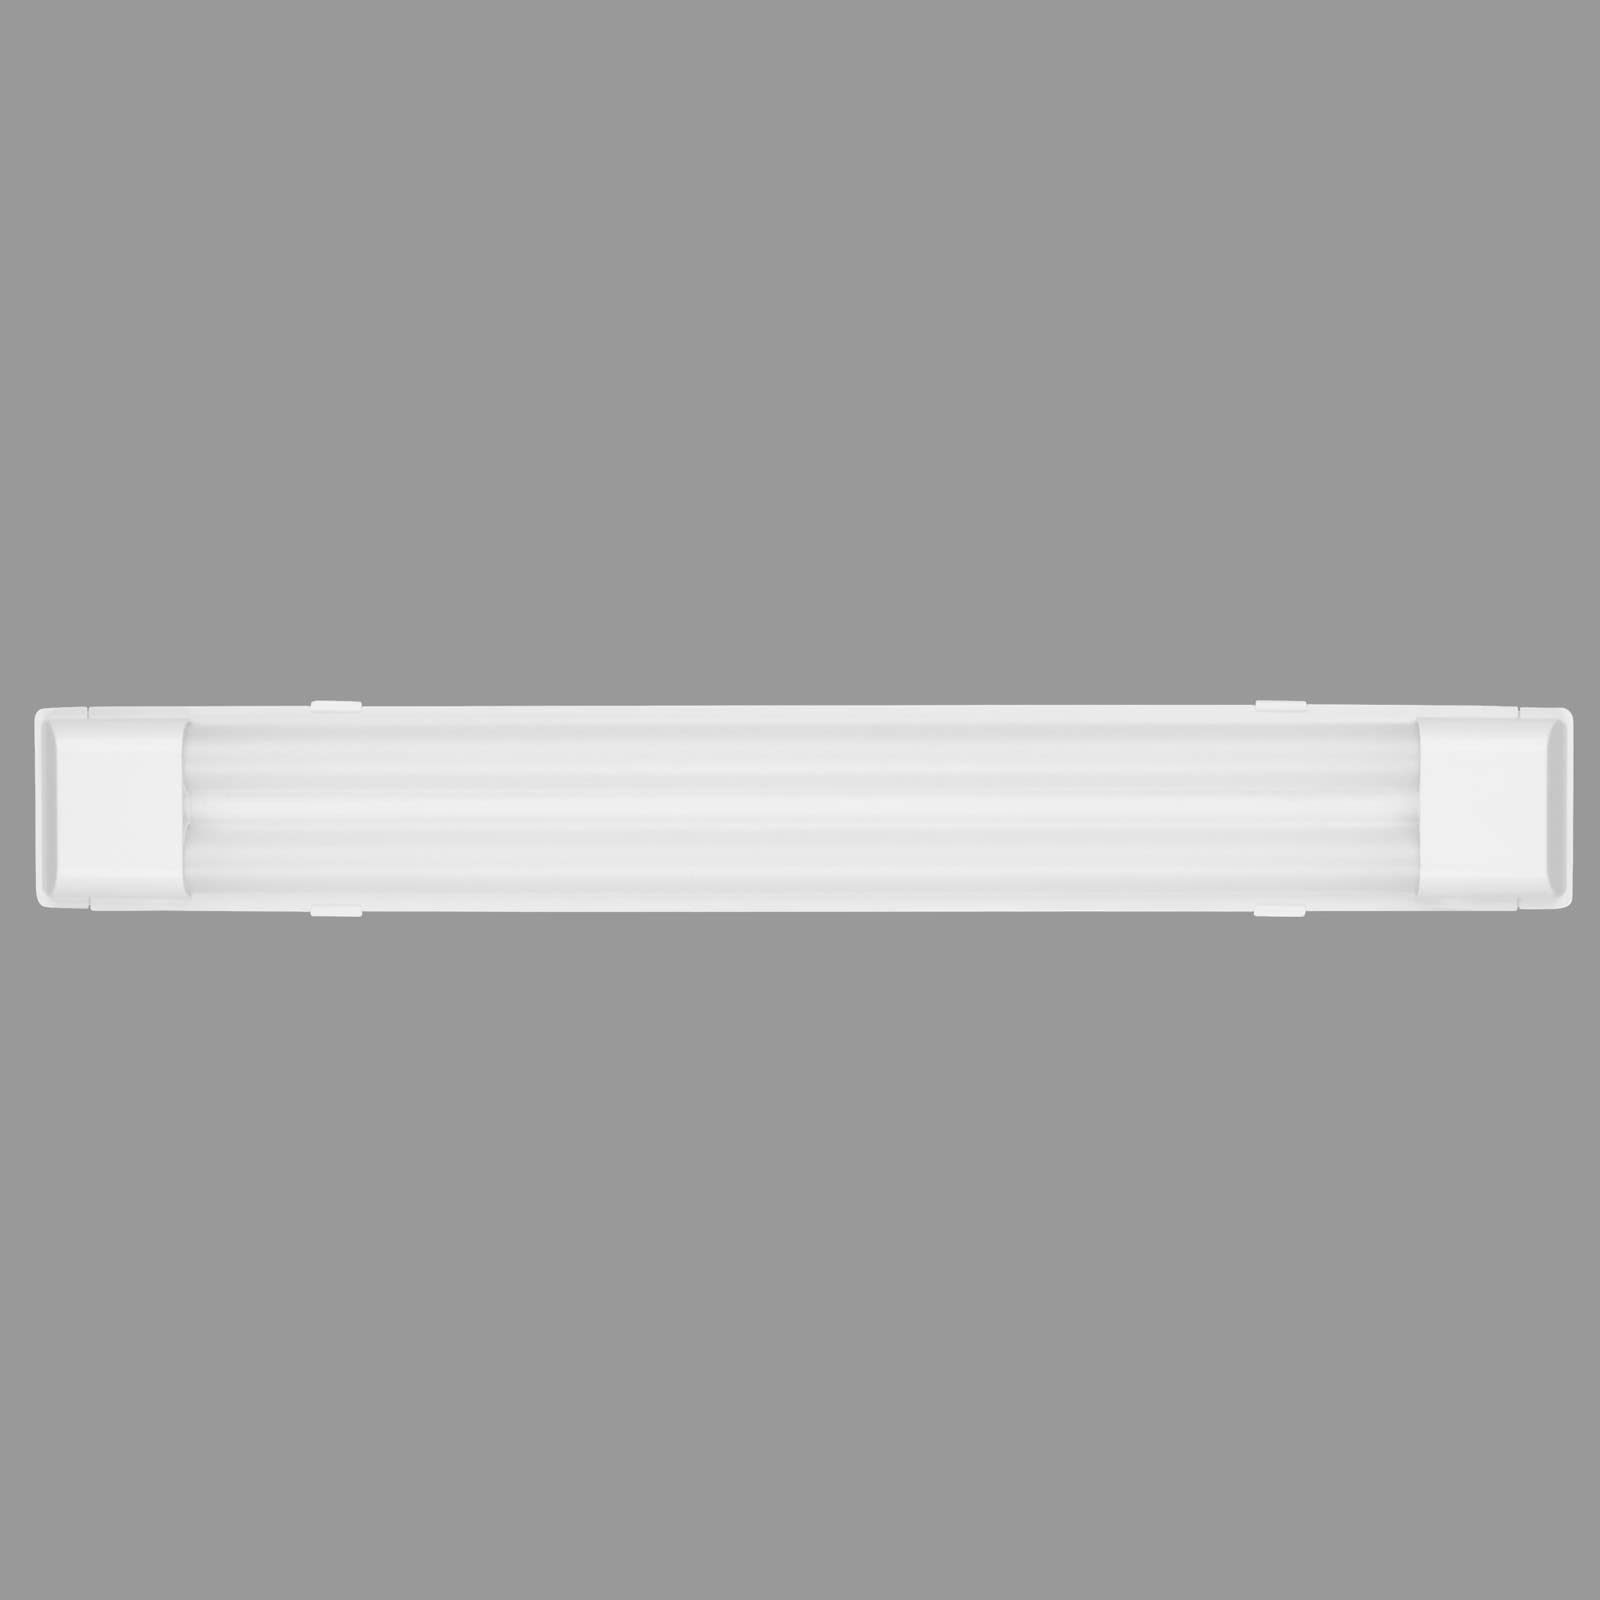 Telefunken - Led Unterbauleuchte 60 cm, Led Deckenlampe Keller, Led Leiste Küchenschrank, Werkstattlampe, Neutralweißes Licht, 22 W, 2700 Lm, Weiß